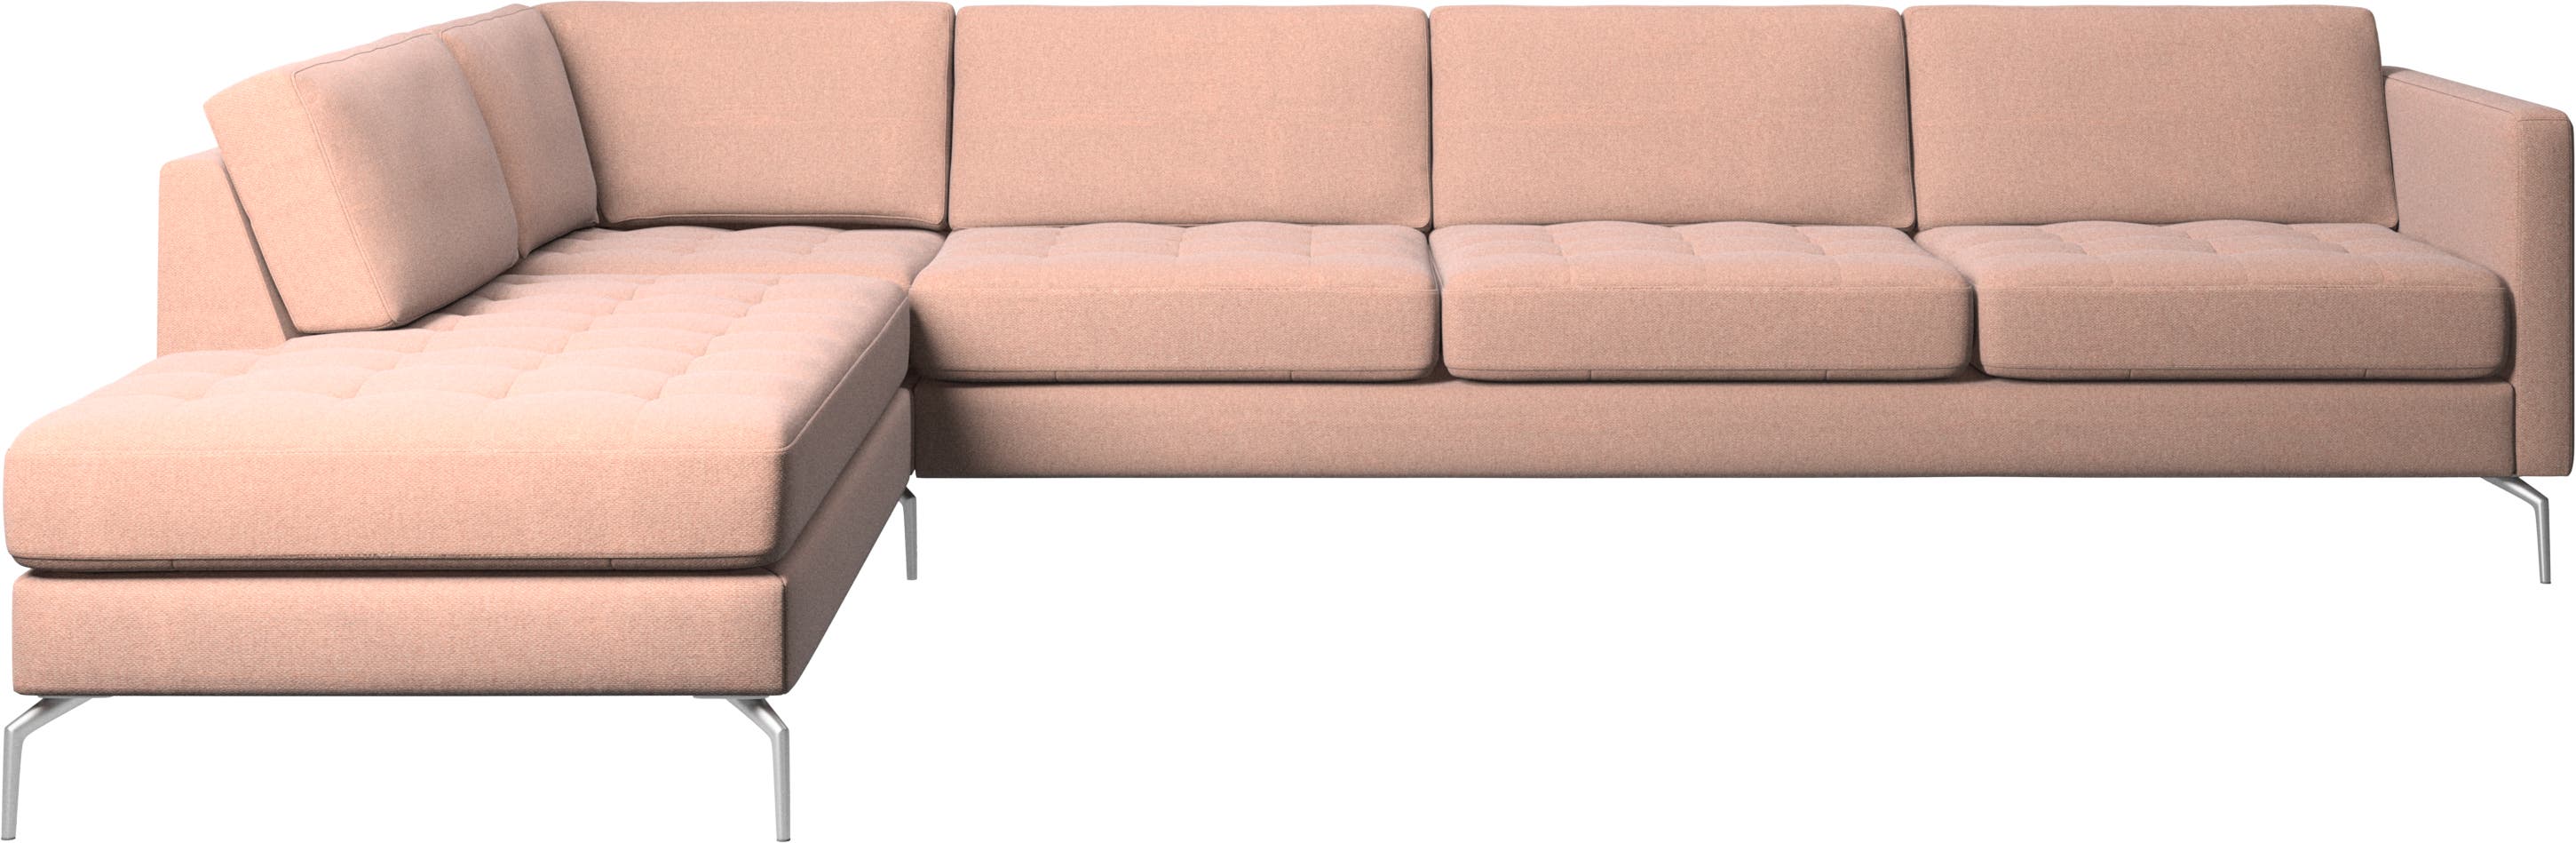 γωνιακός καναπές Osaka με μονάδα lounging, καπιτονέ μαξιλάρι καθίσματος